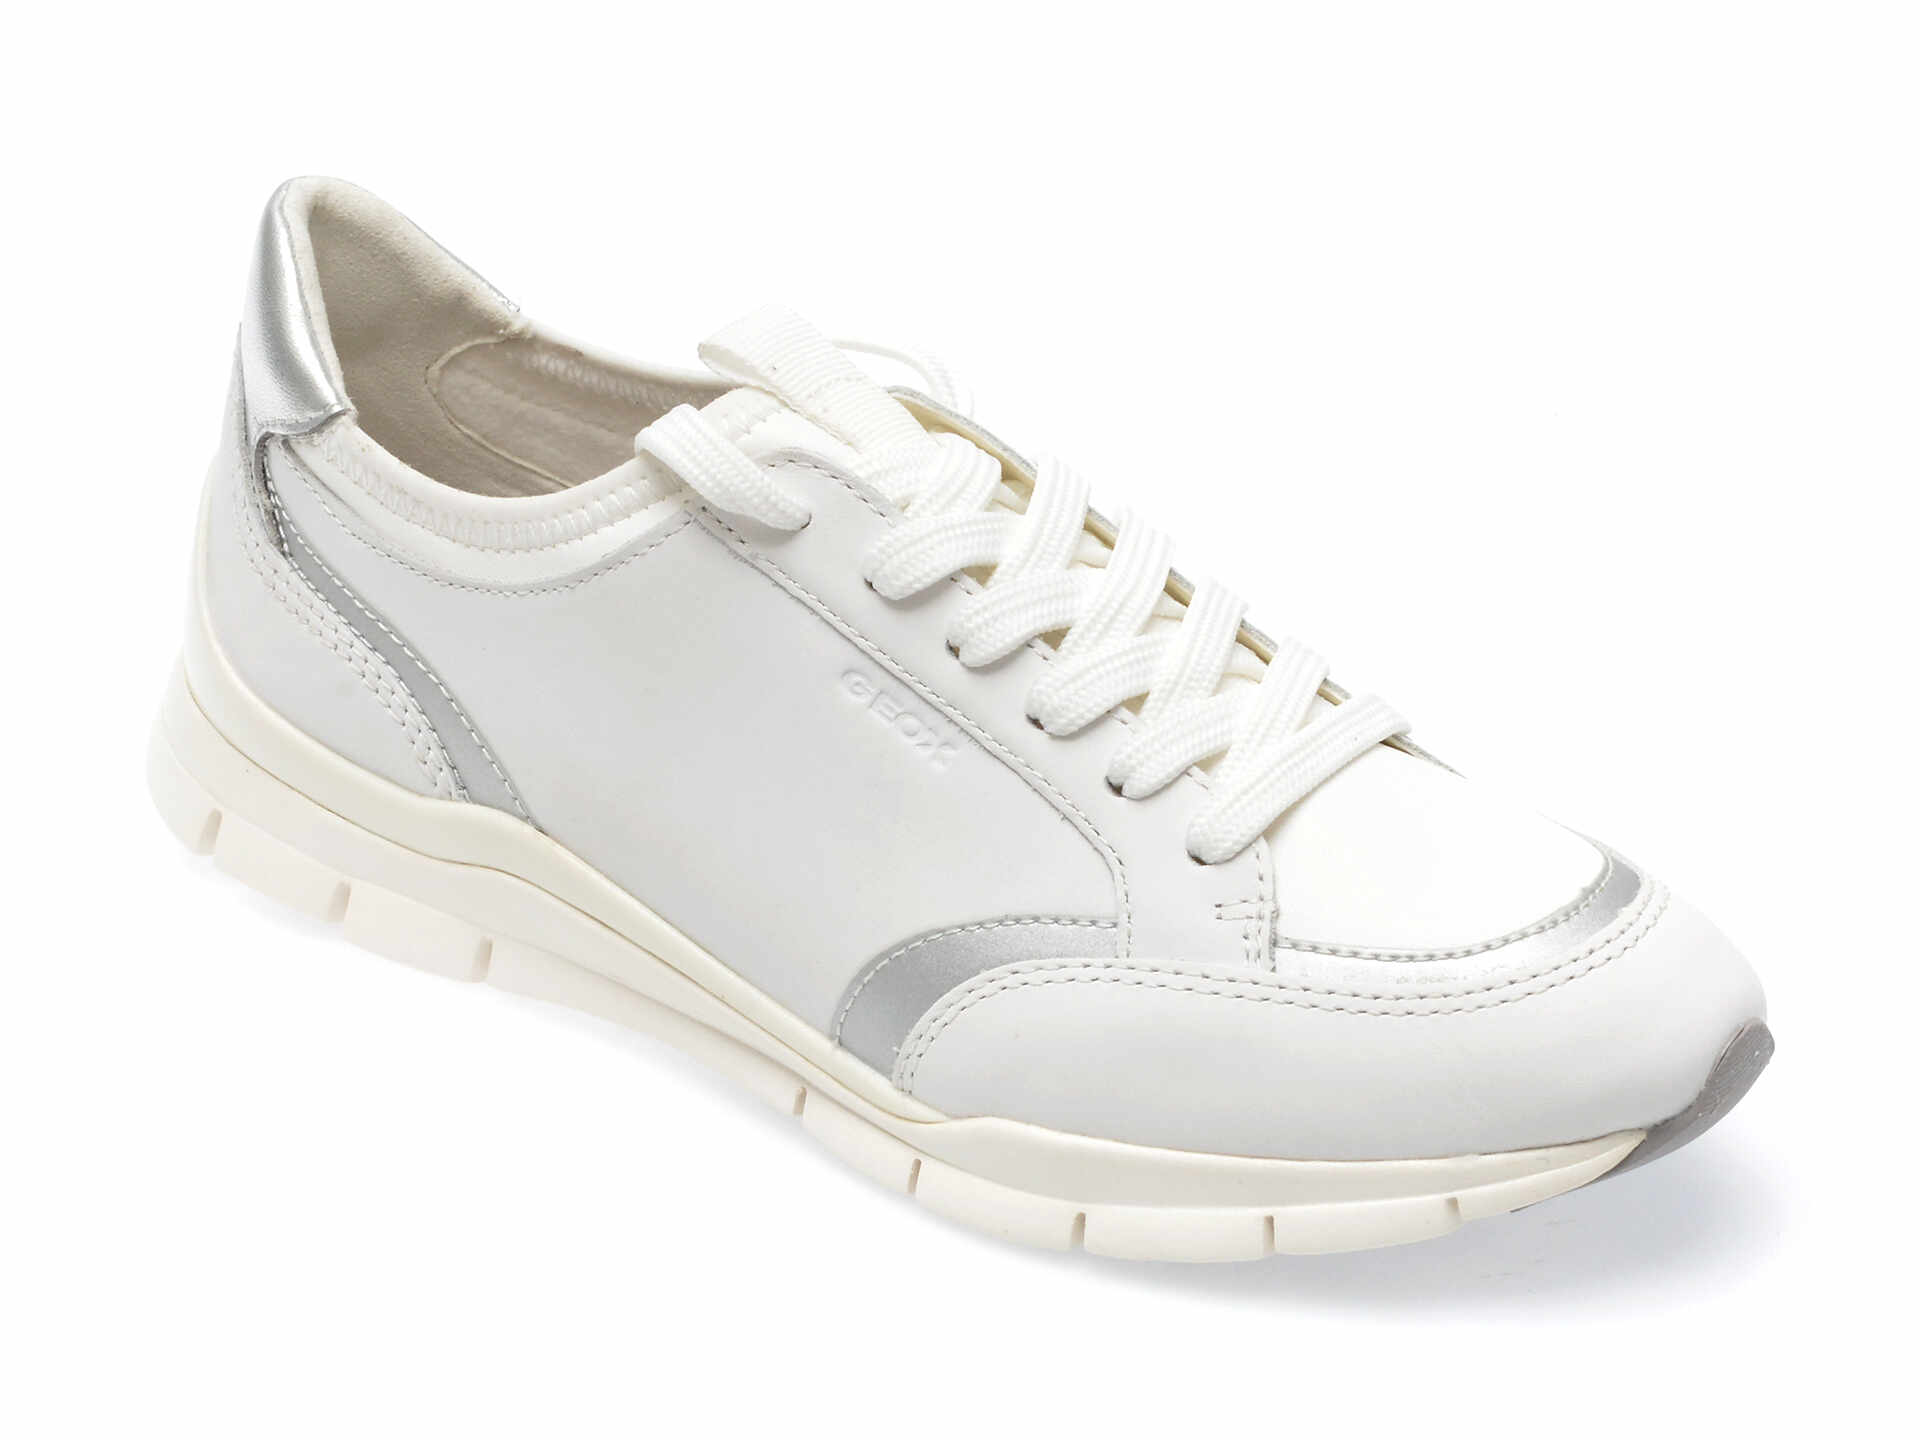 Pantofi GEOX albi, D35F2B, din piele ecologica